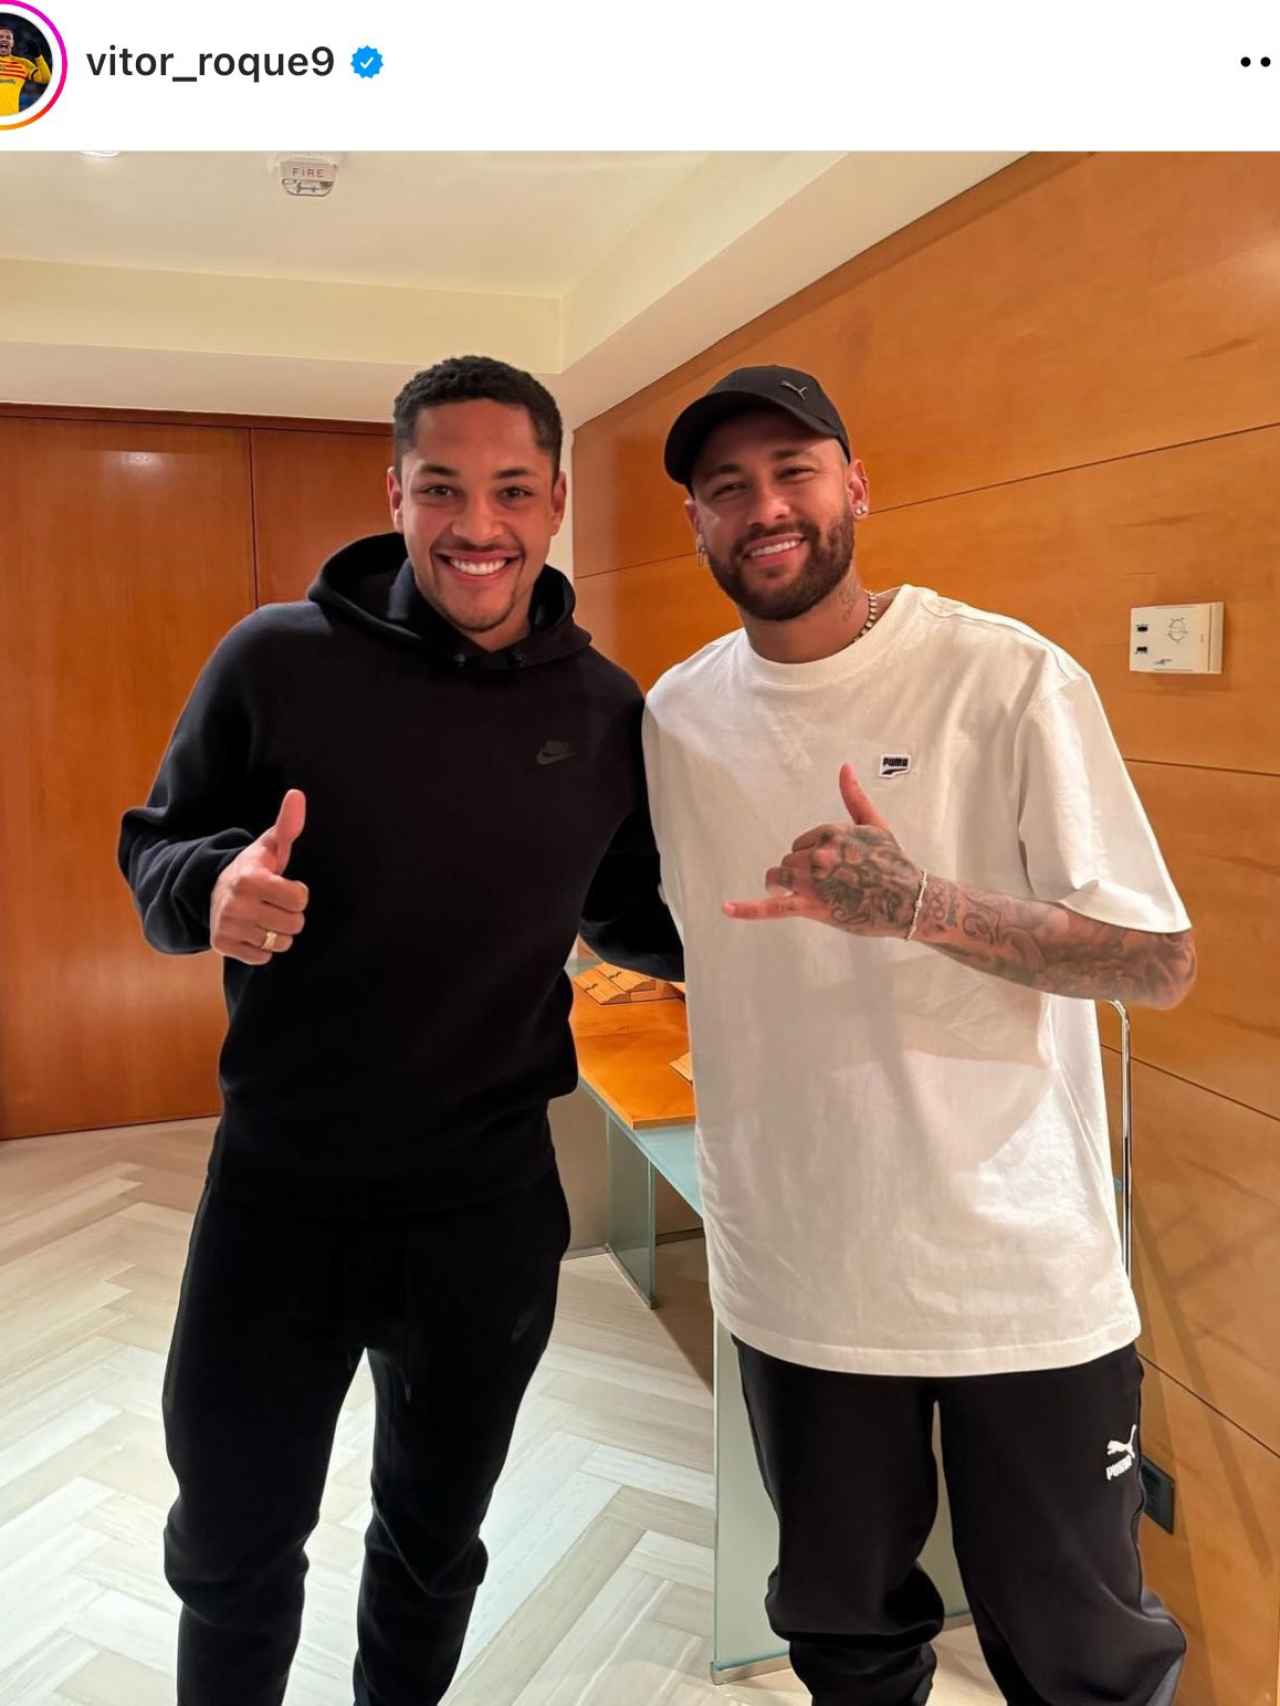 La sonrisa de Vitor Roque tras compartir un momento con Neymar